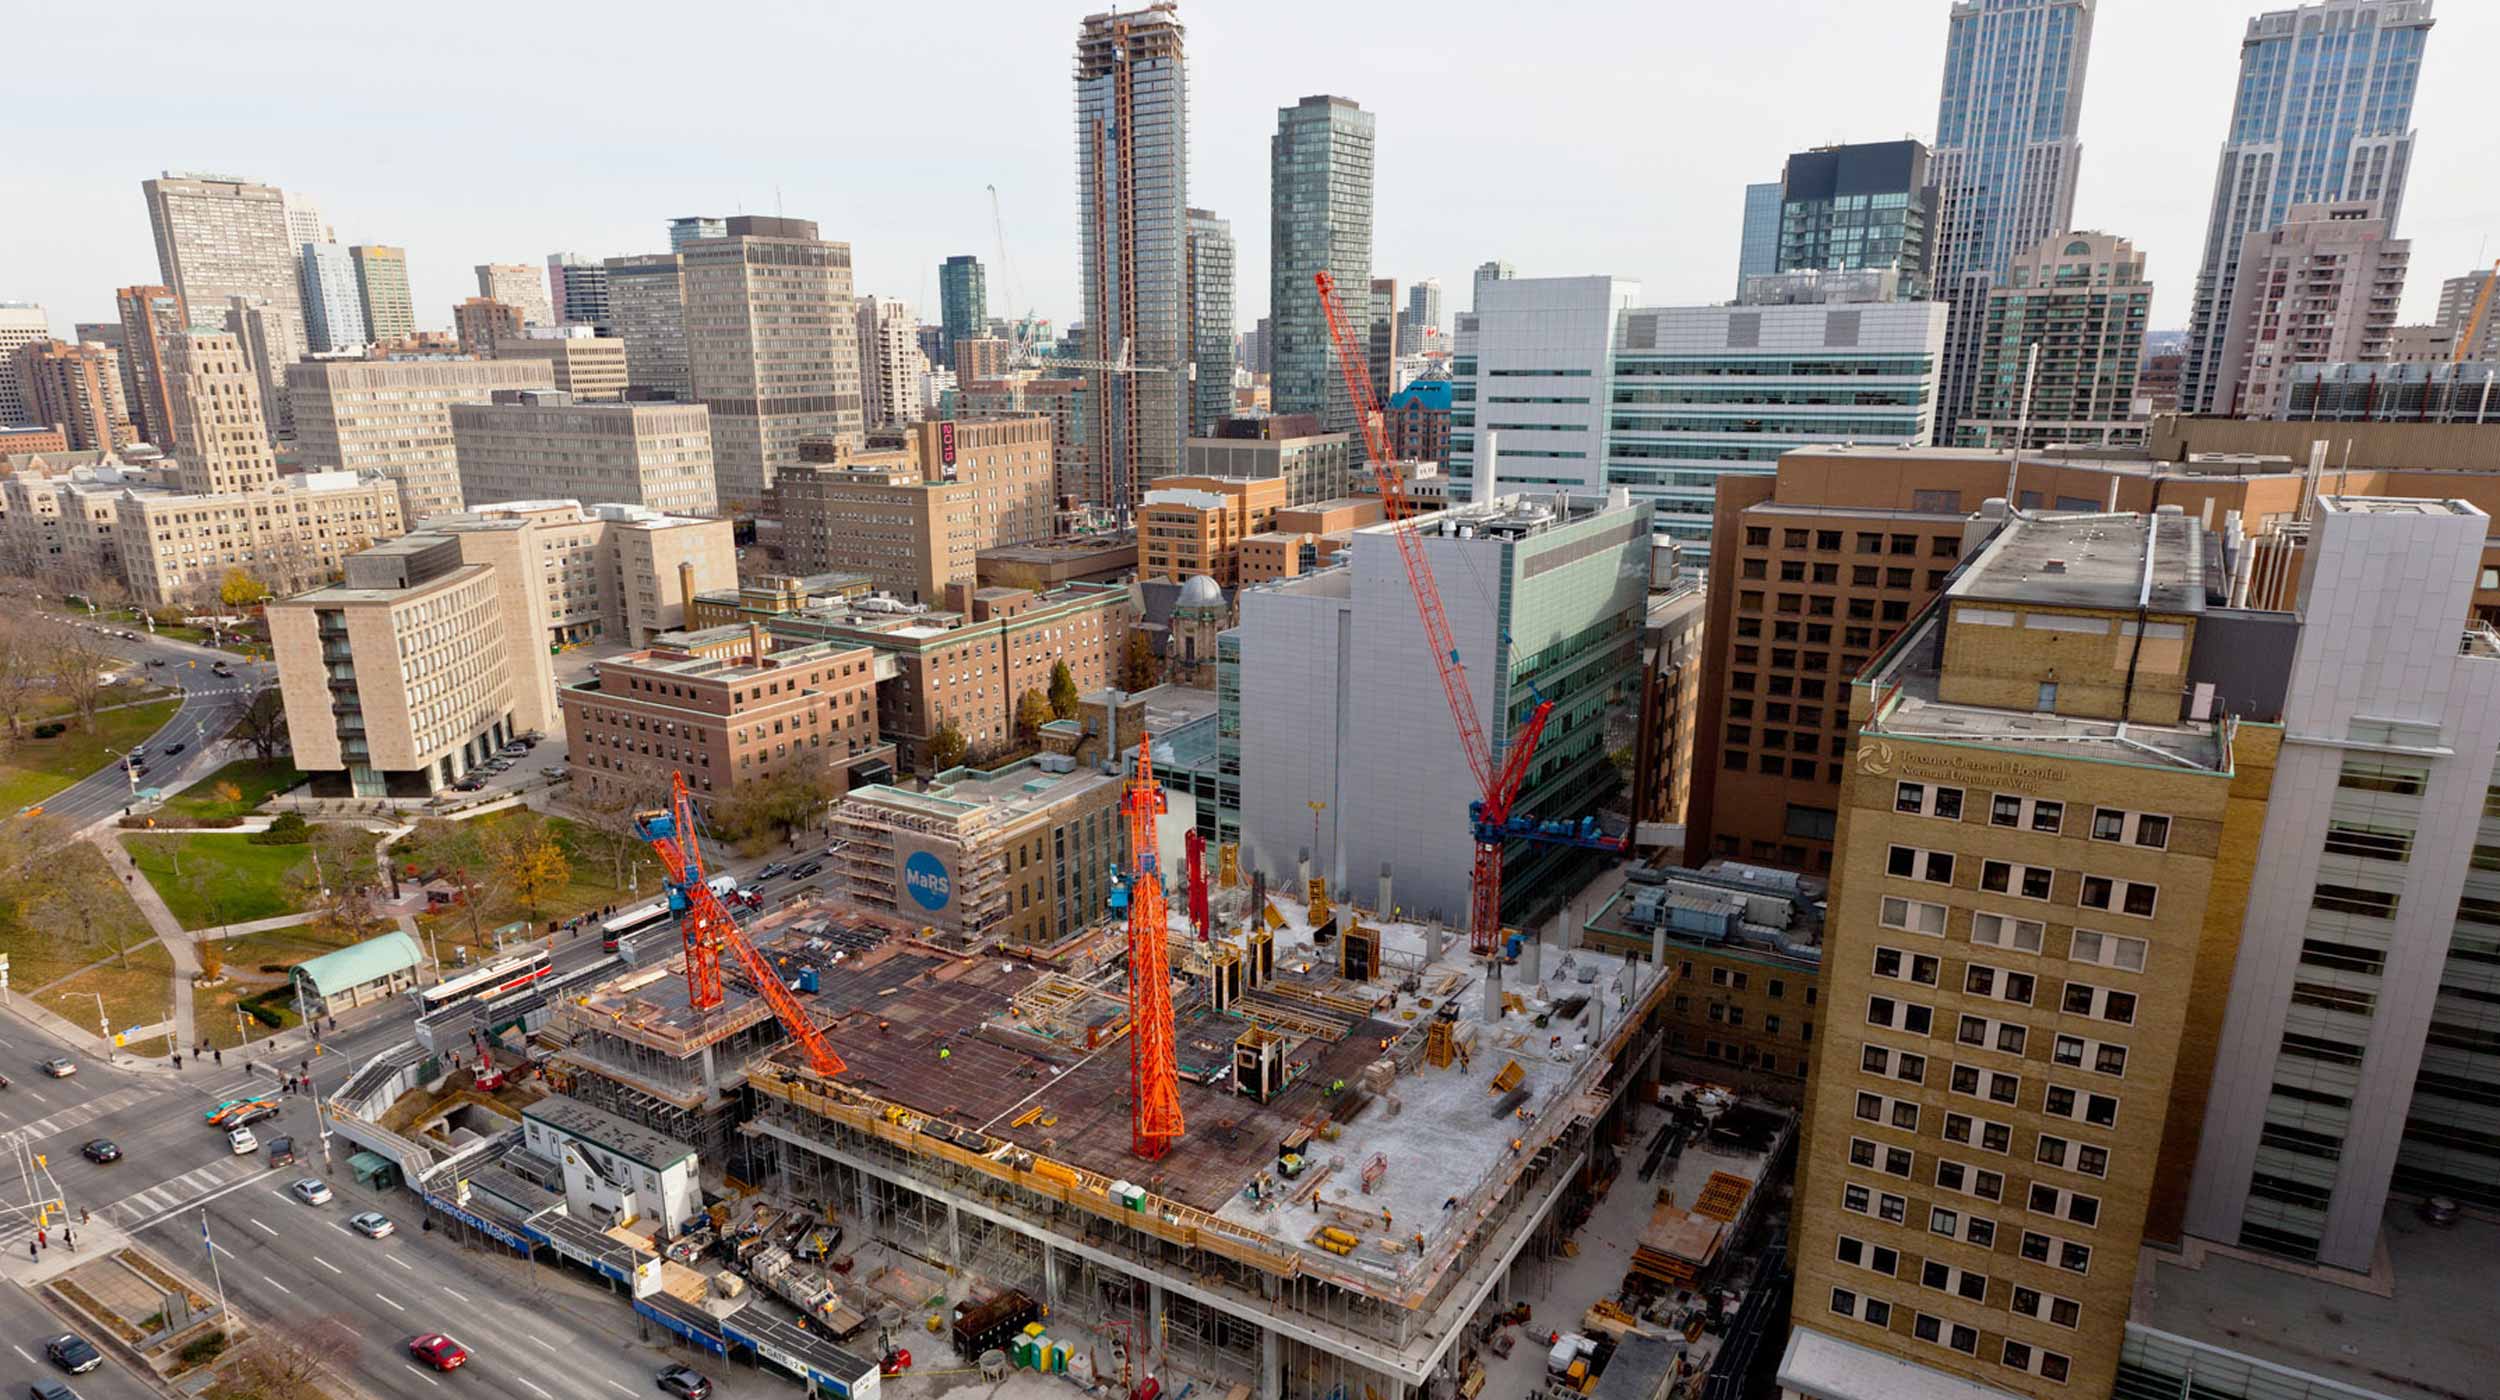 Situé dans le quartier Discovery de Toronto, la Phase II du Centre MaRs s’étendra sur 74 000 m² en comptant le complexe déjà existant.